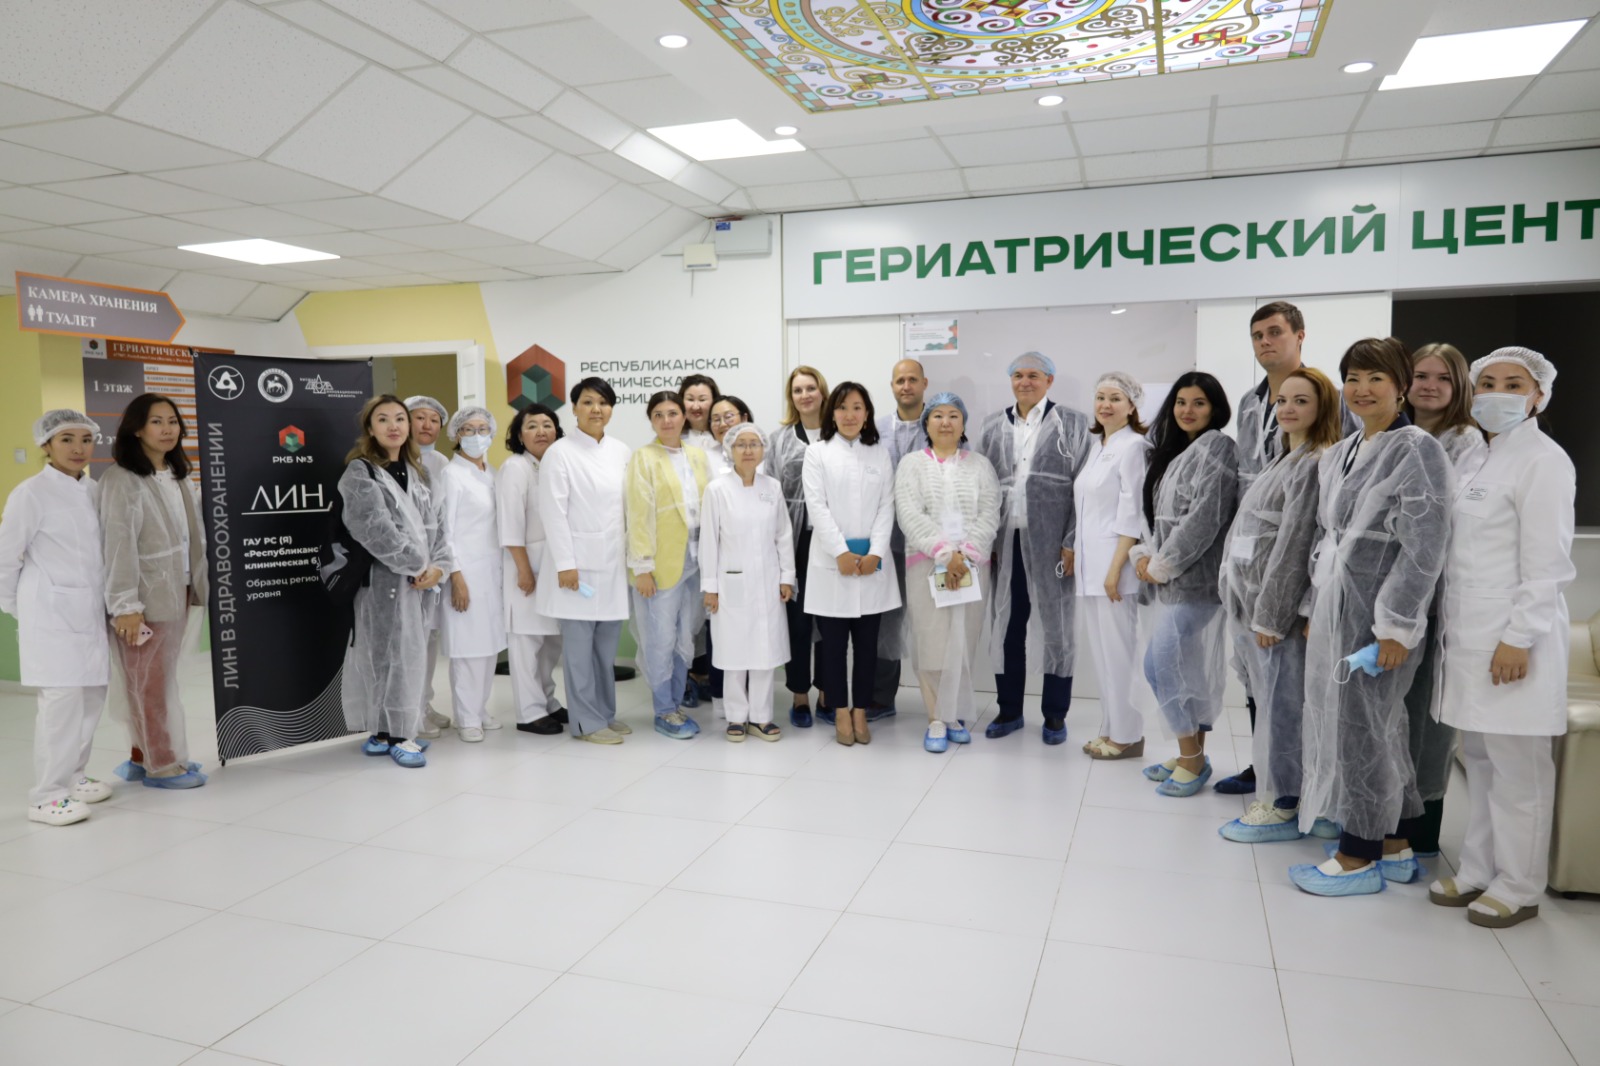 Фото: официальный информационный портал Якутии